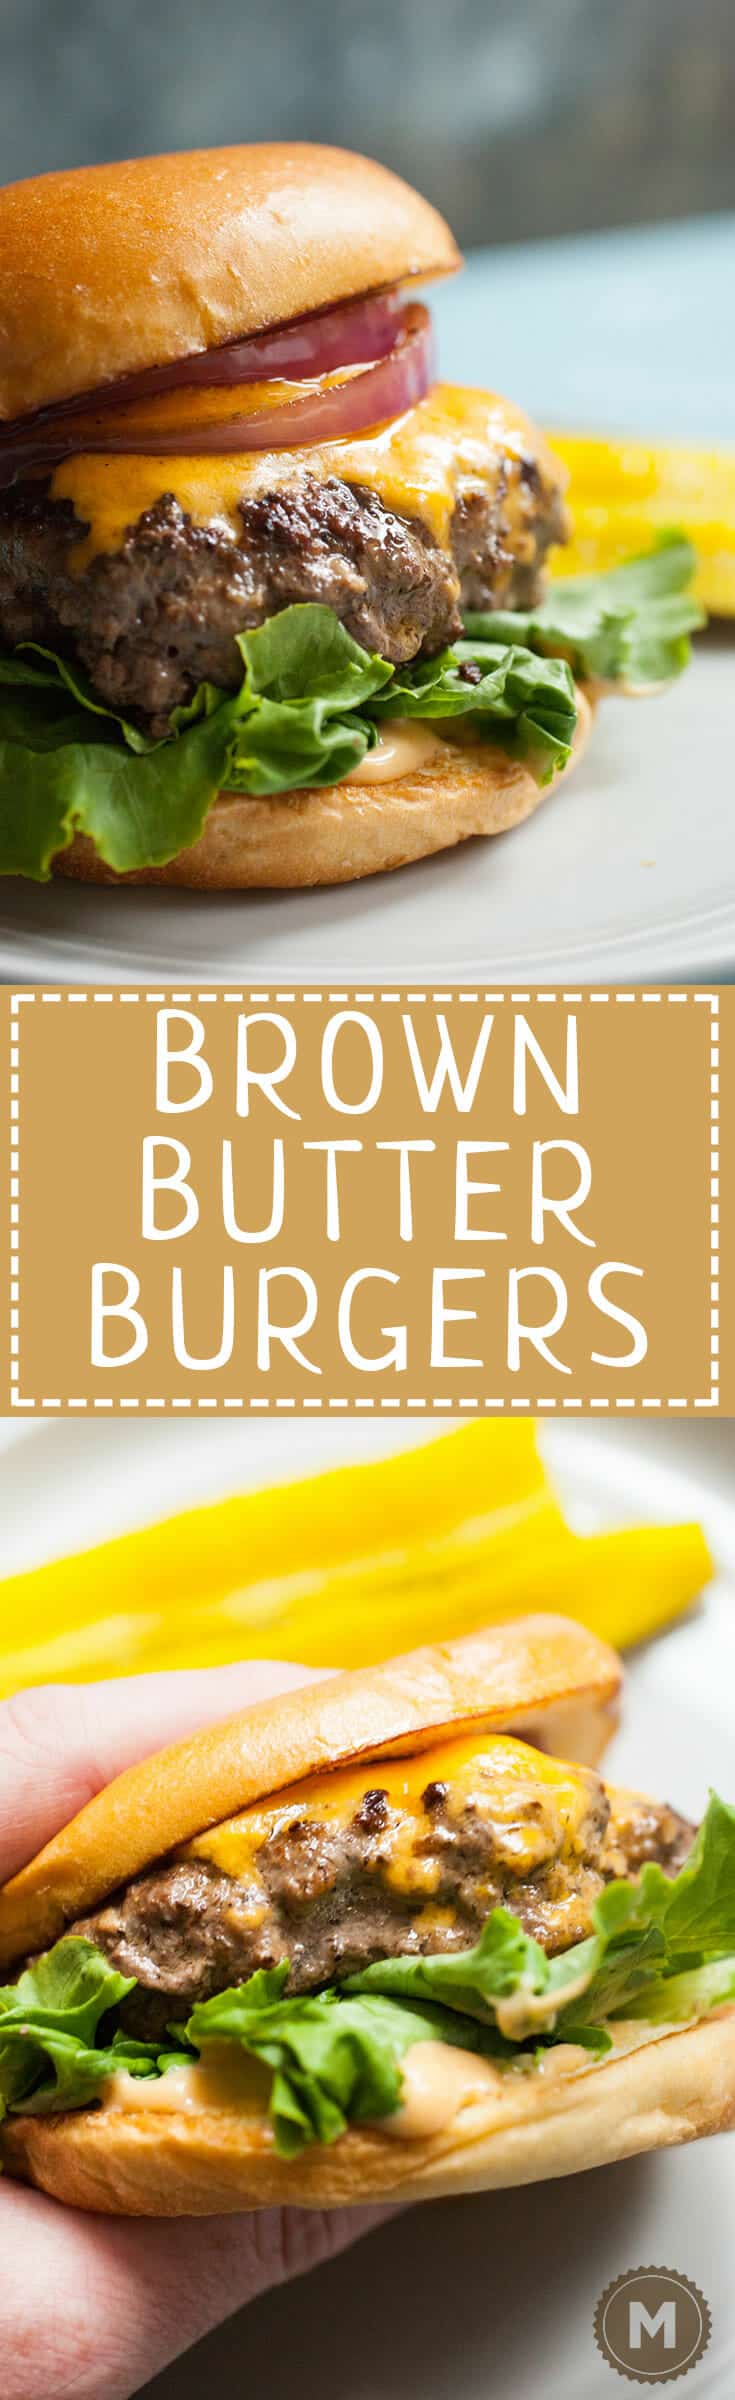 Brown Butter Burger